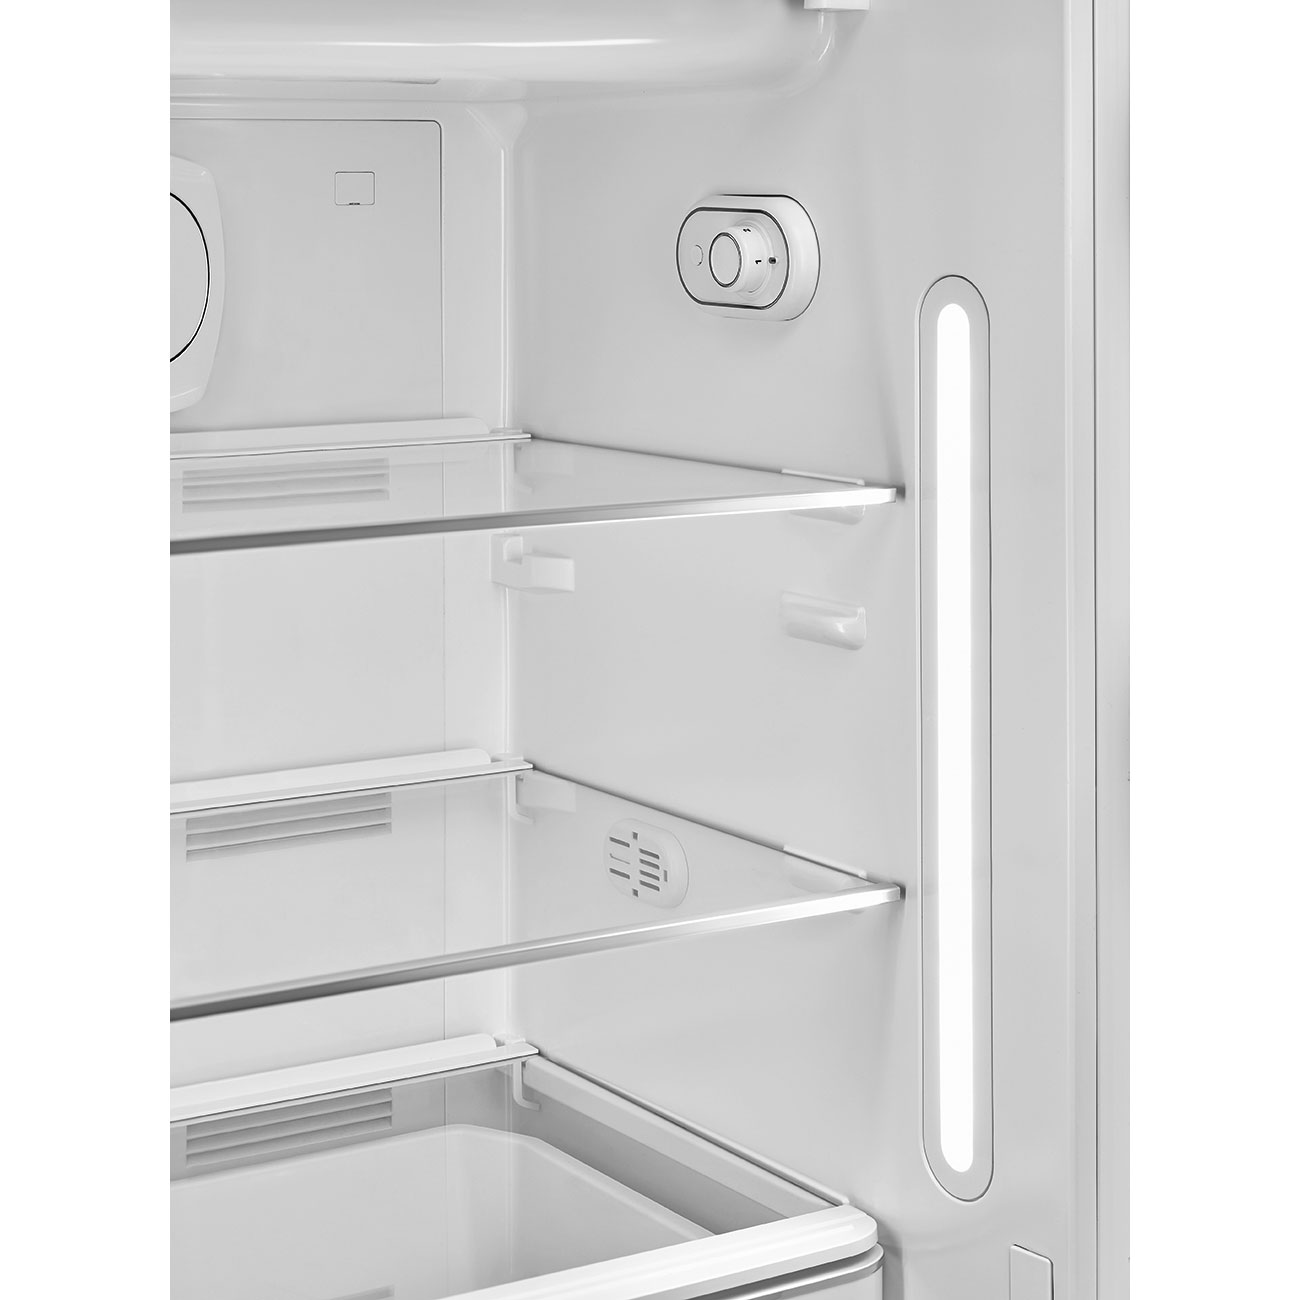 Pastellgrün Retro-Kühlschränke von Smeg_6